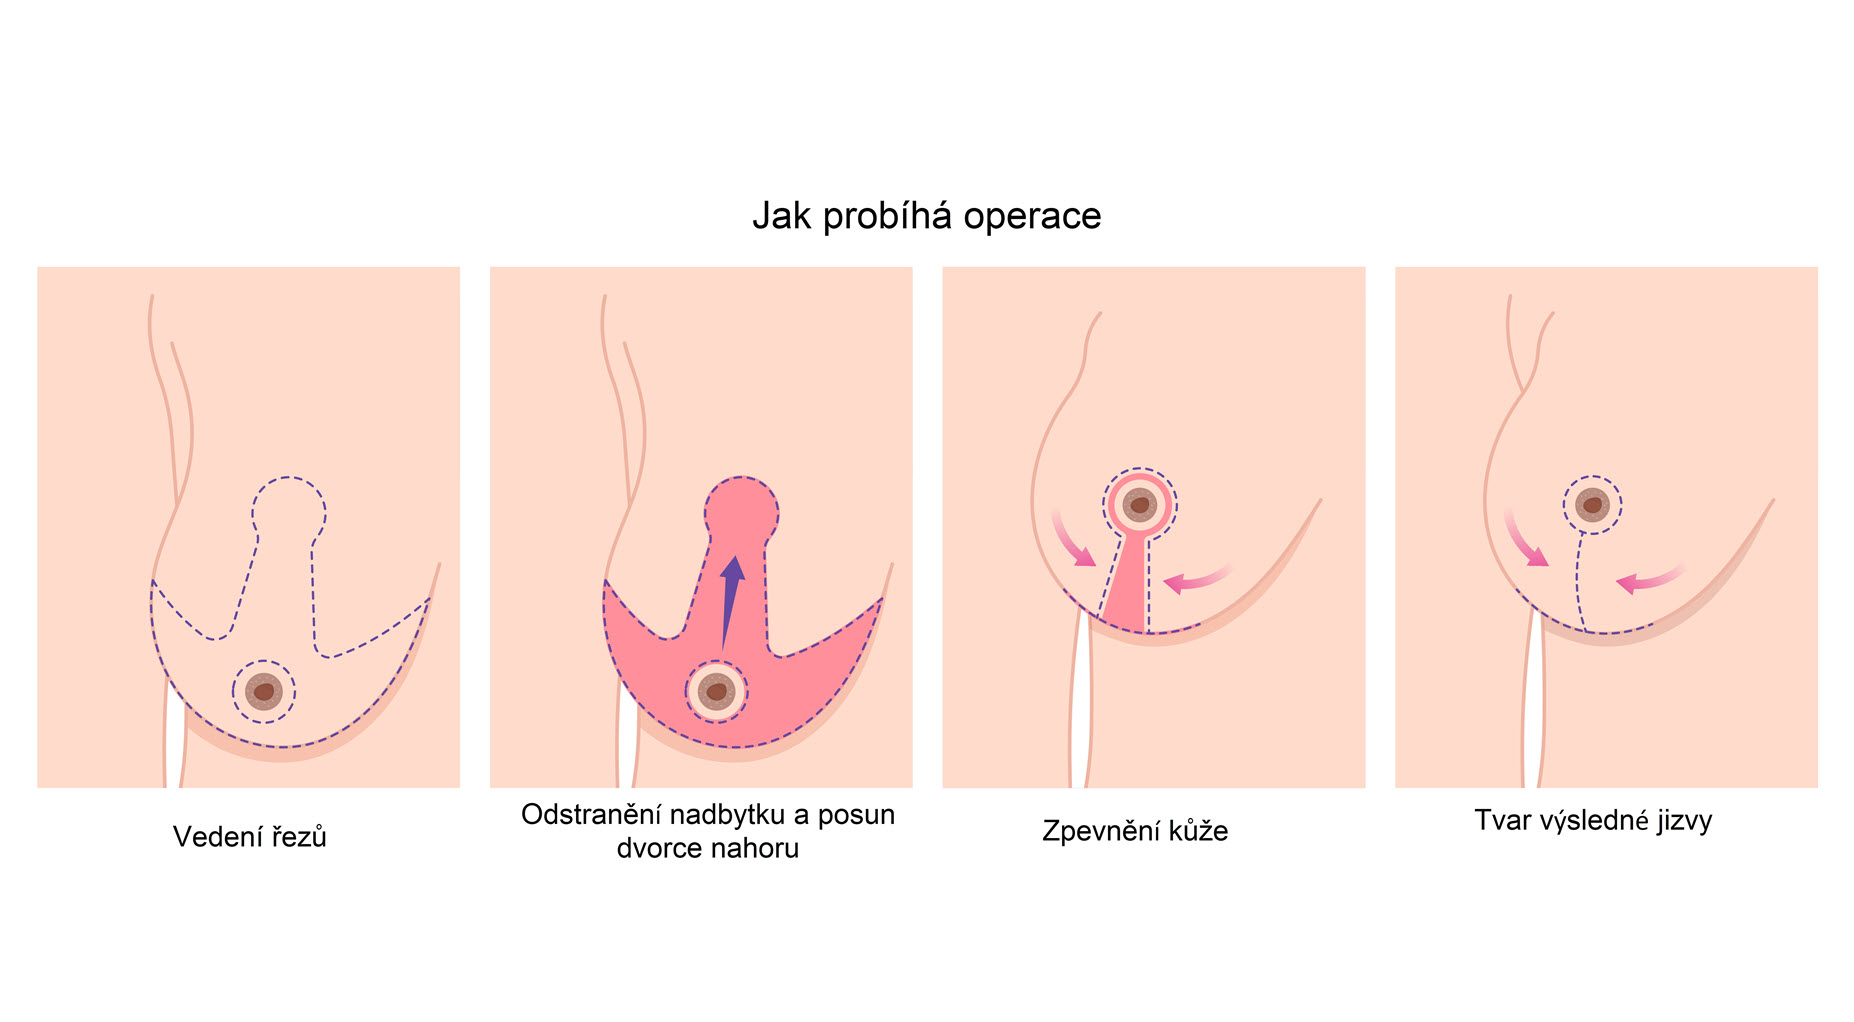 zmenšení prsou - jak probíhá operace, modelace prsou